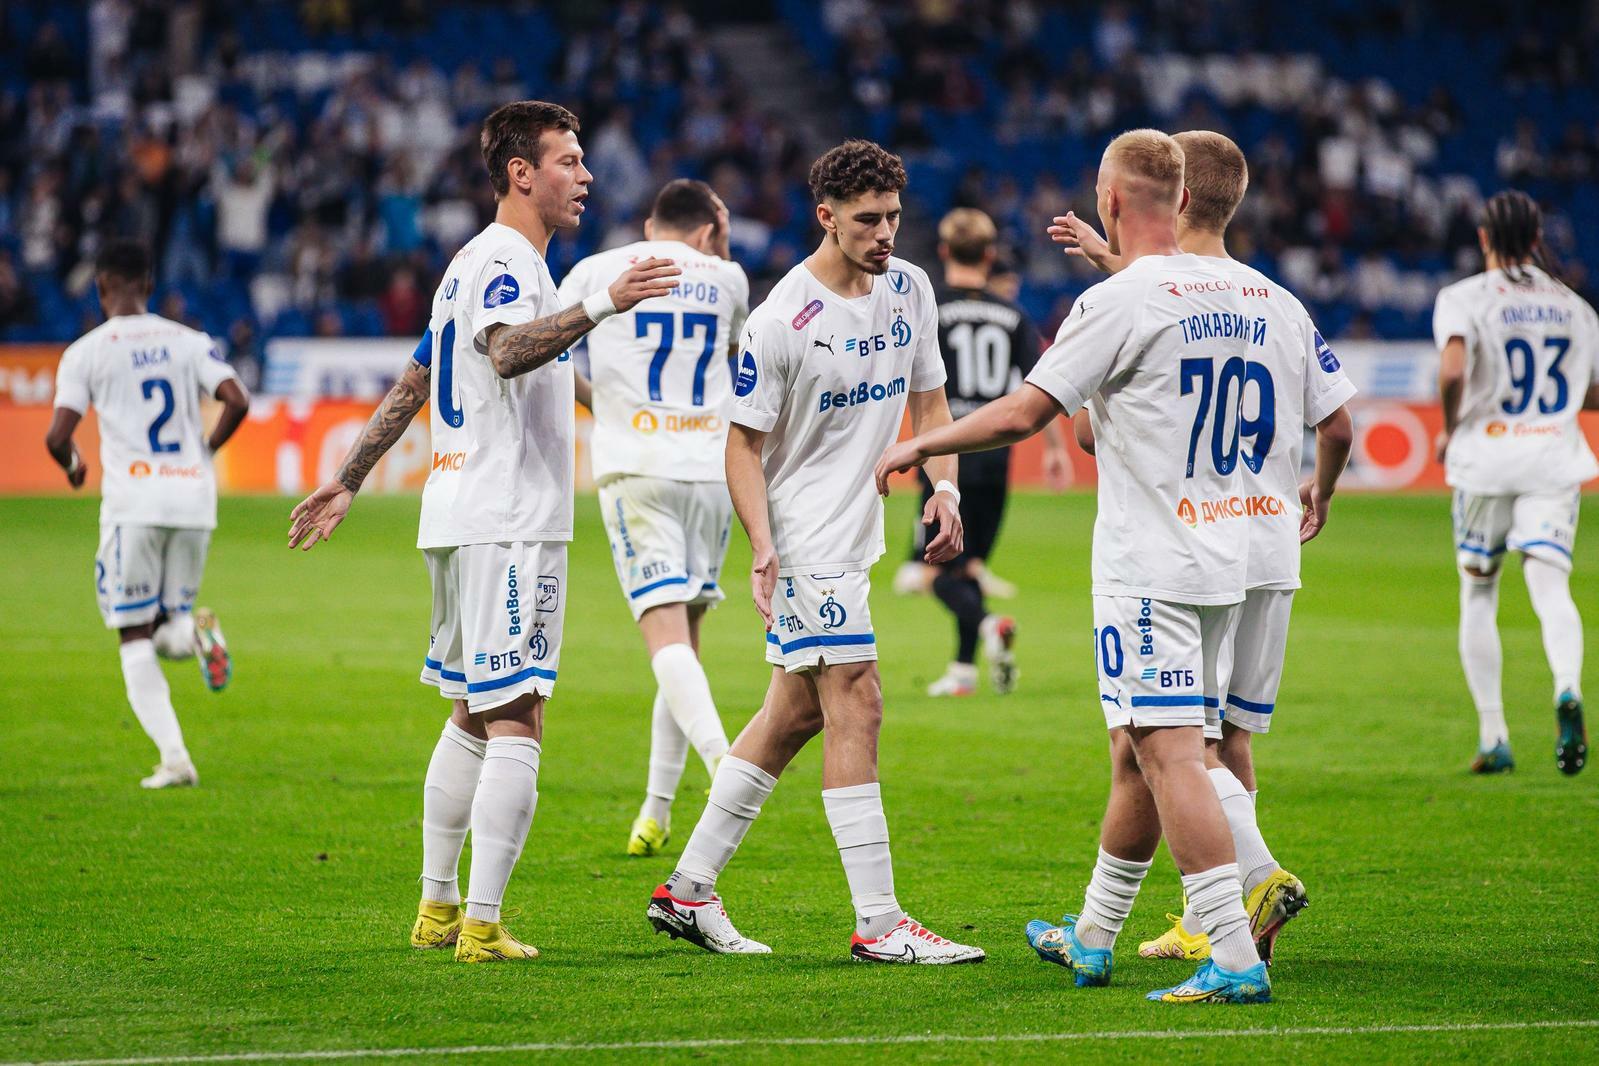 Noticias del FC "Dynamo" Moscú | Nicolás Marichal: "El trabajo coordinado y la ausencia de egoísmo en el campo nos traen éxito". Sitio oficial del club Dynamo.